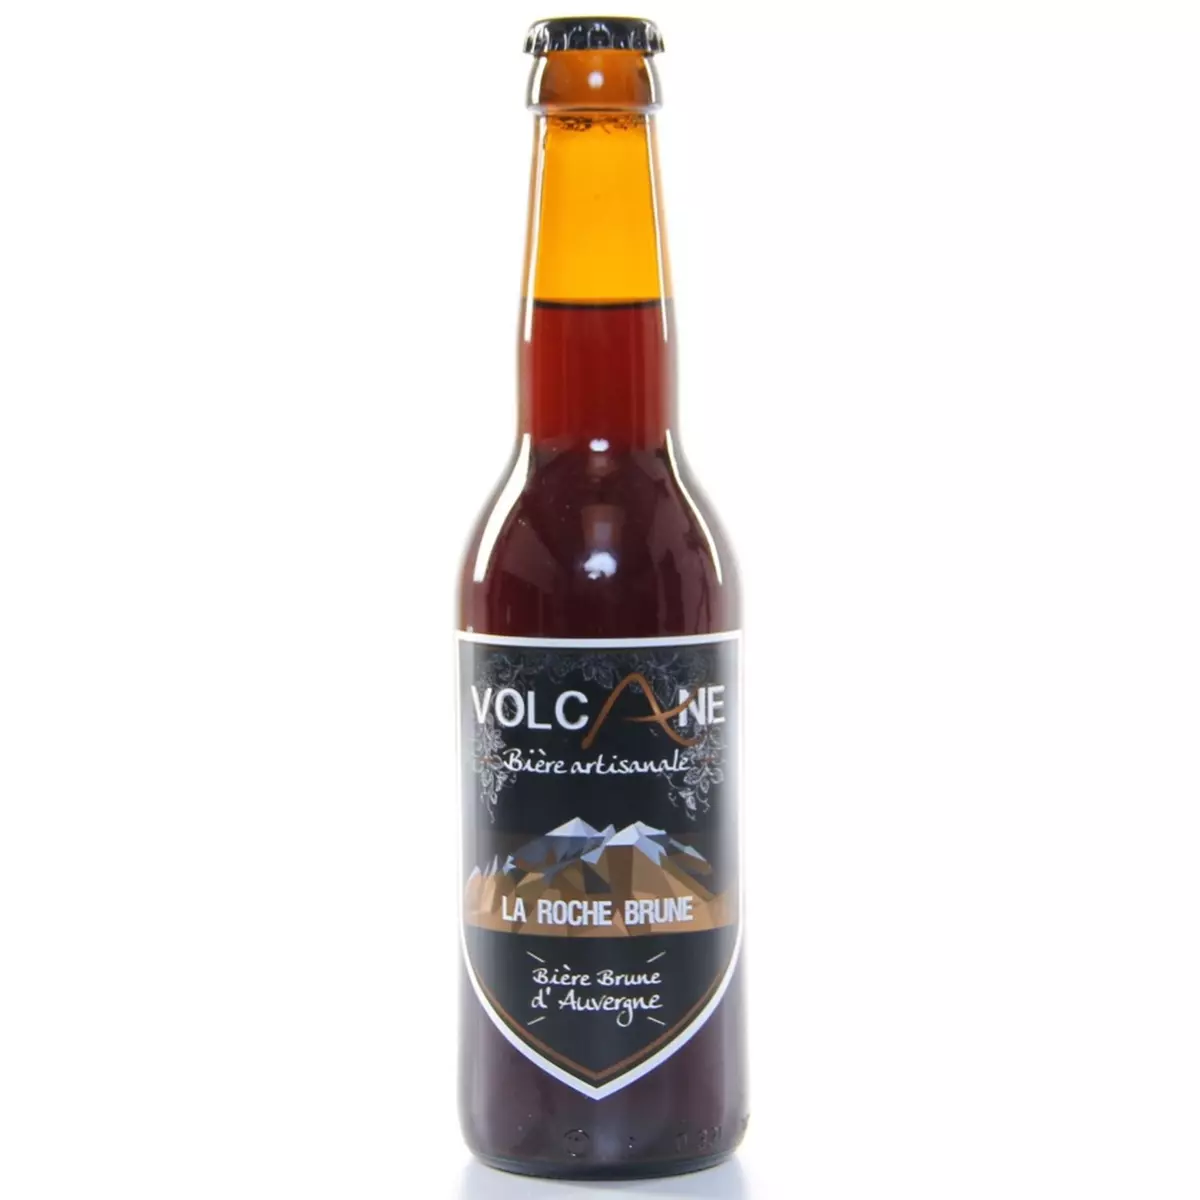 VOLCANE Bière brune d'Auvergne La roche brune 5.8% bouteille 33cl